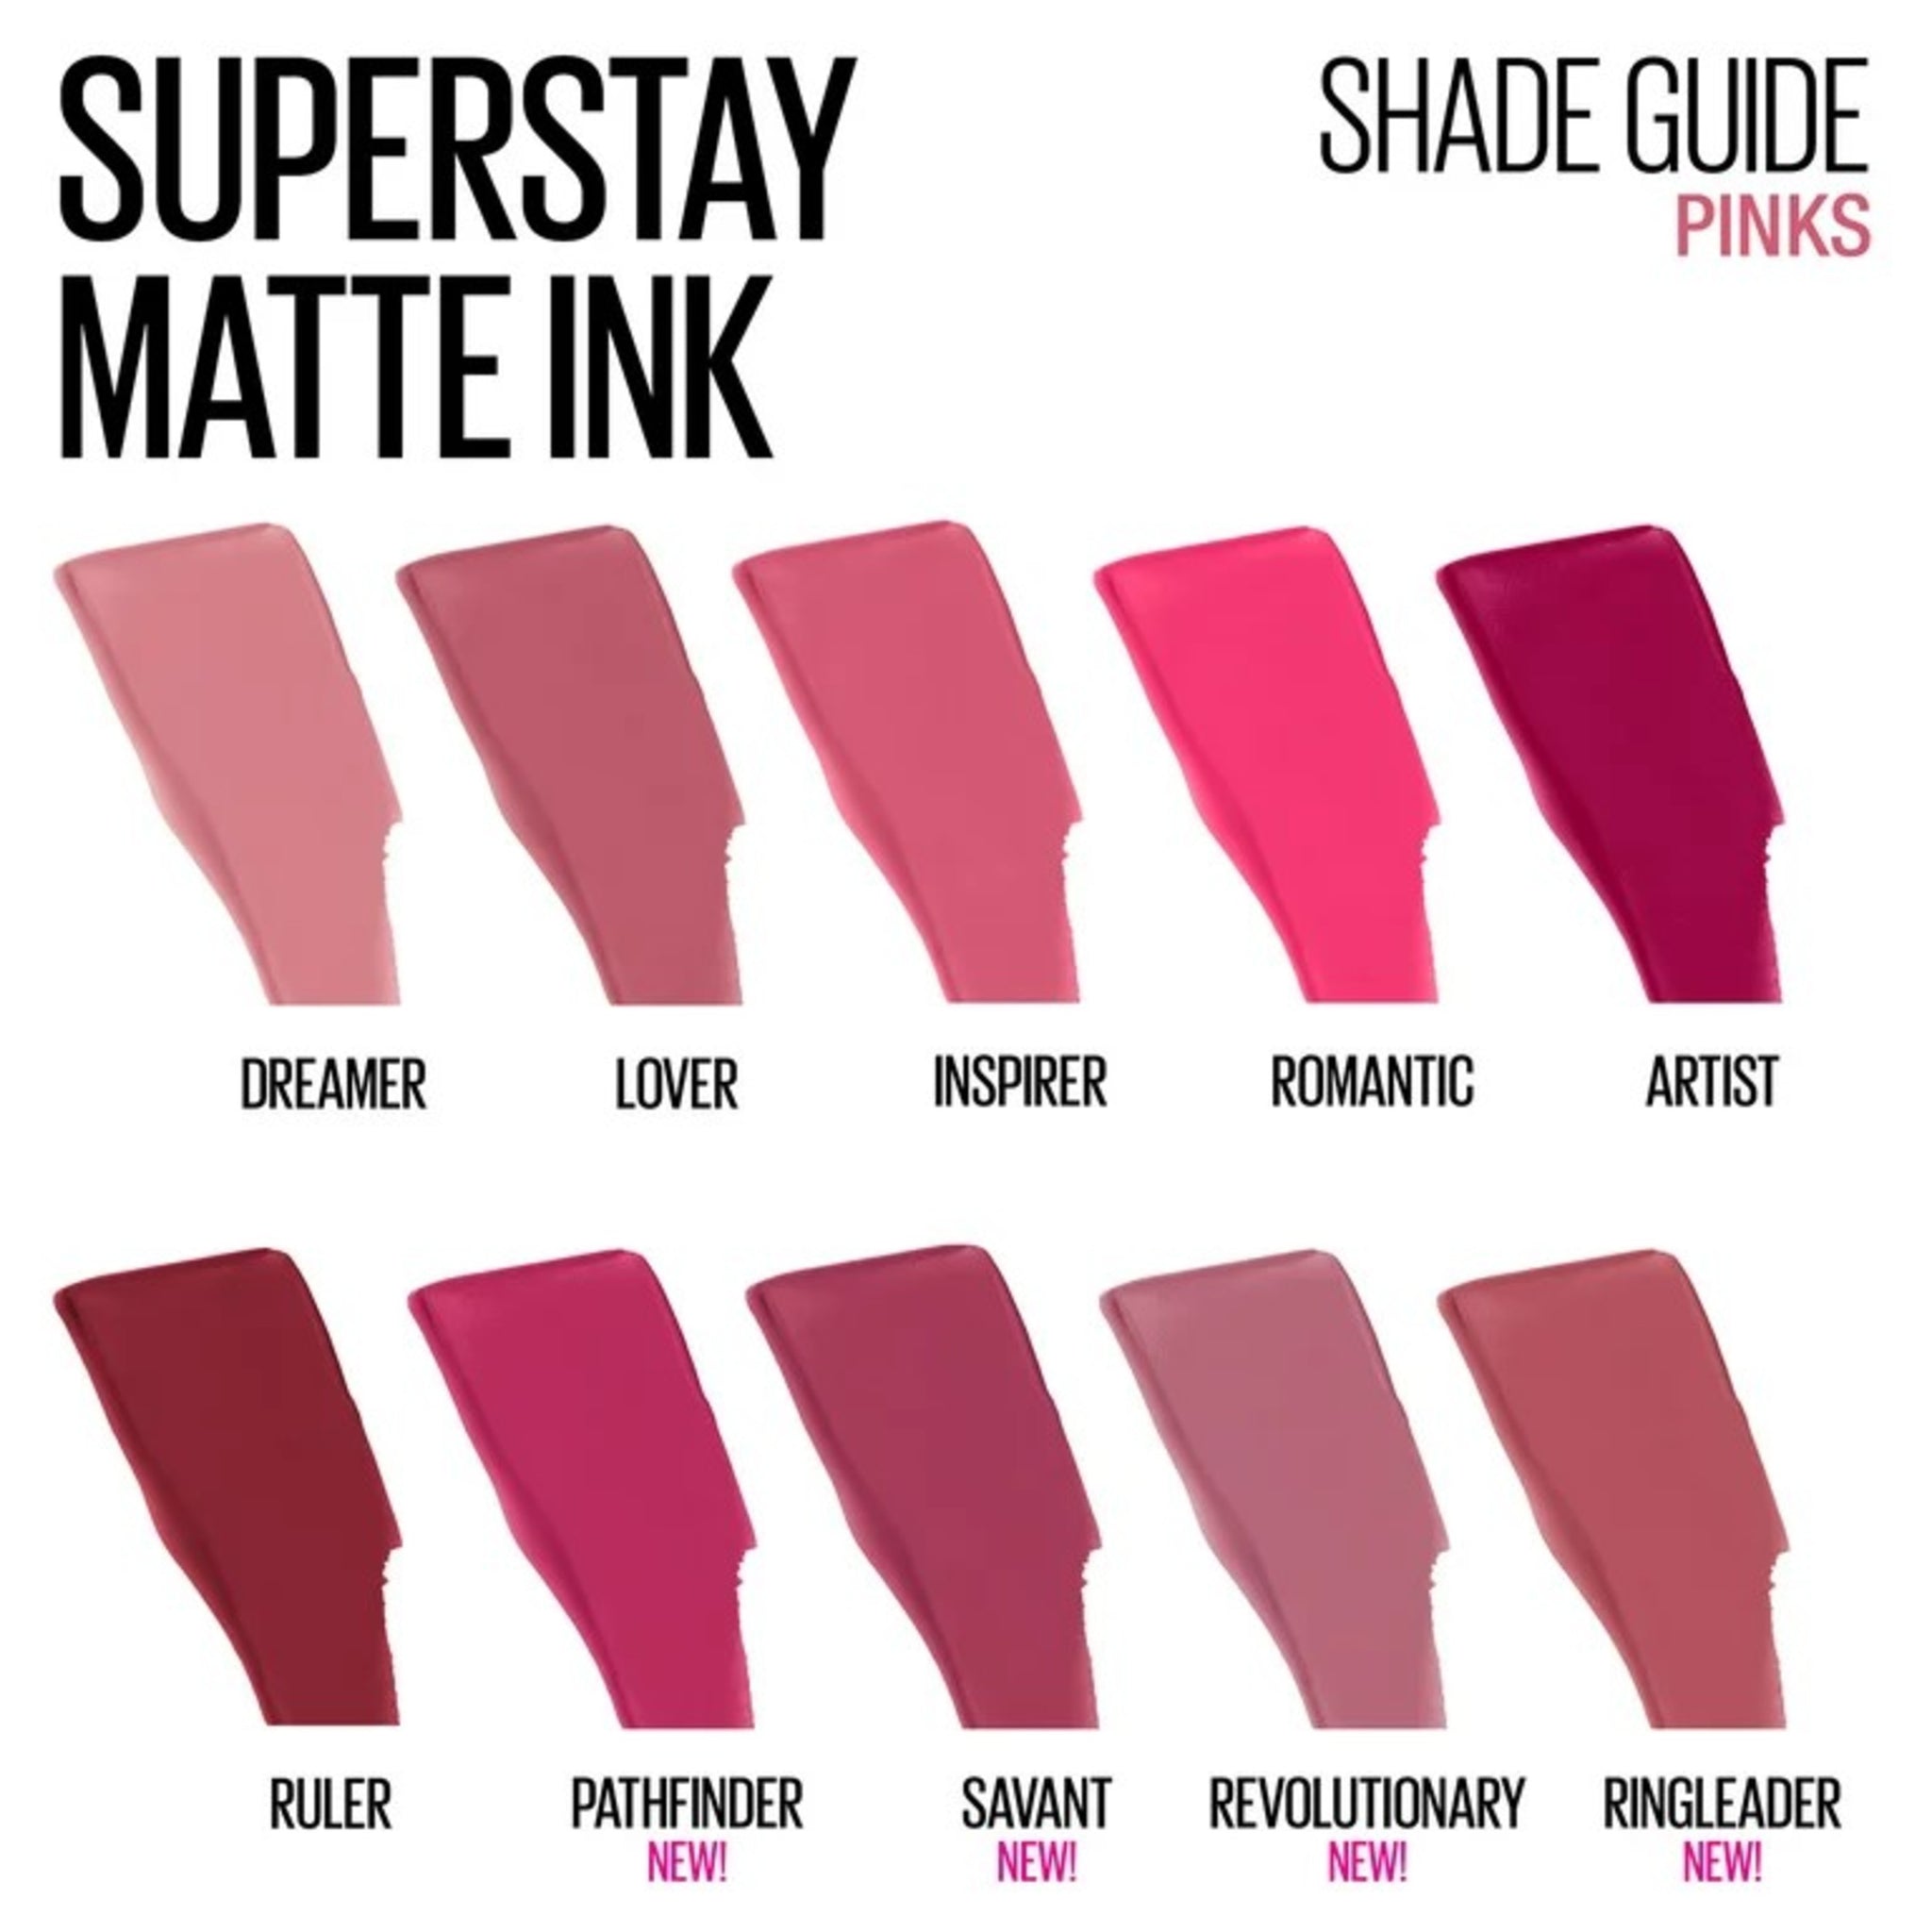 SuperStay Matte Ink Lip Color